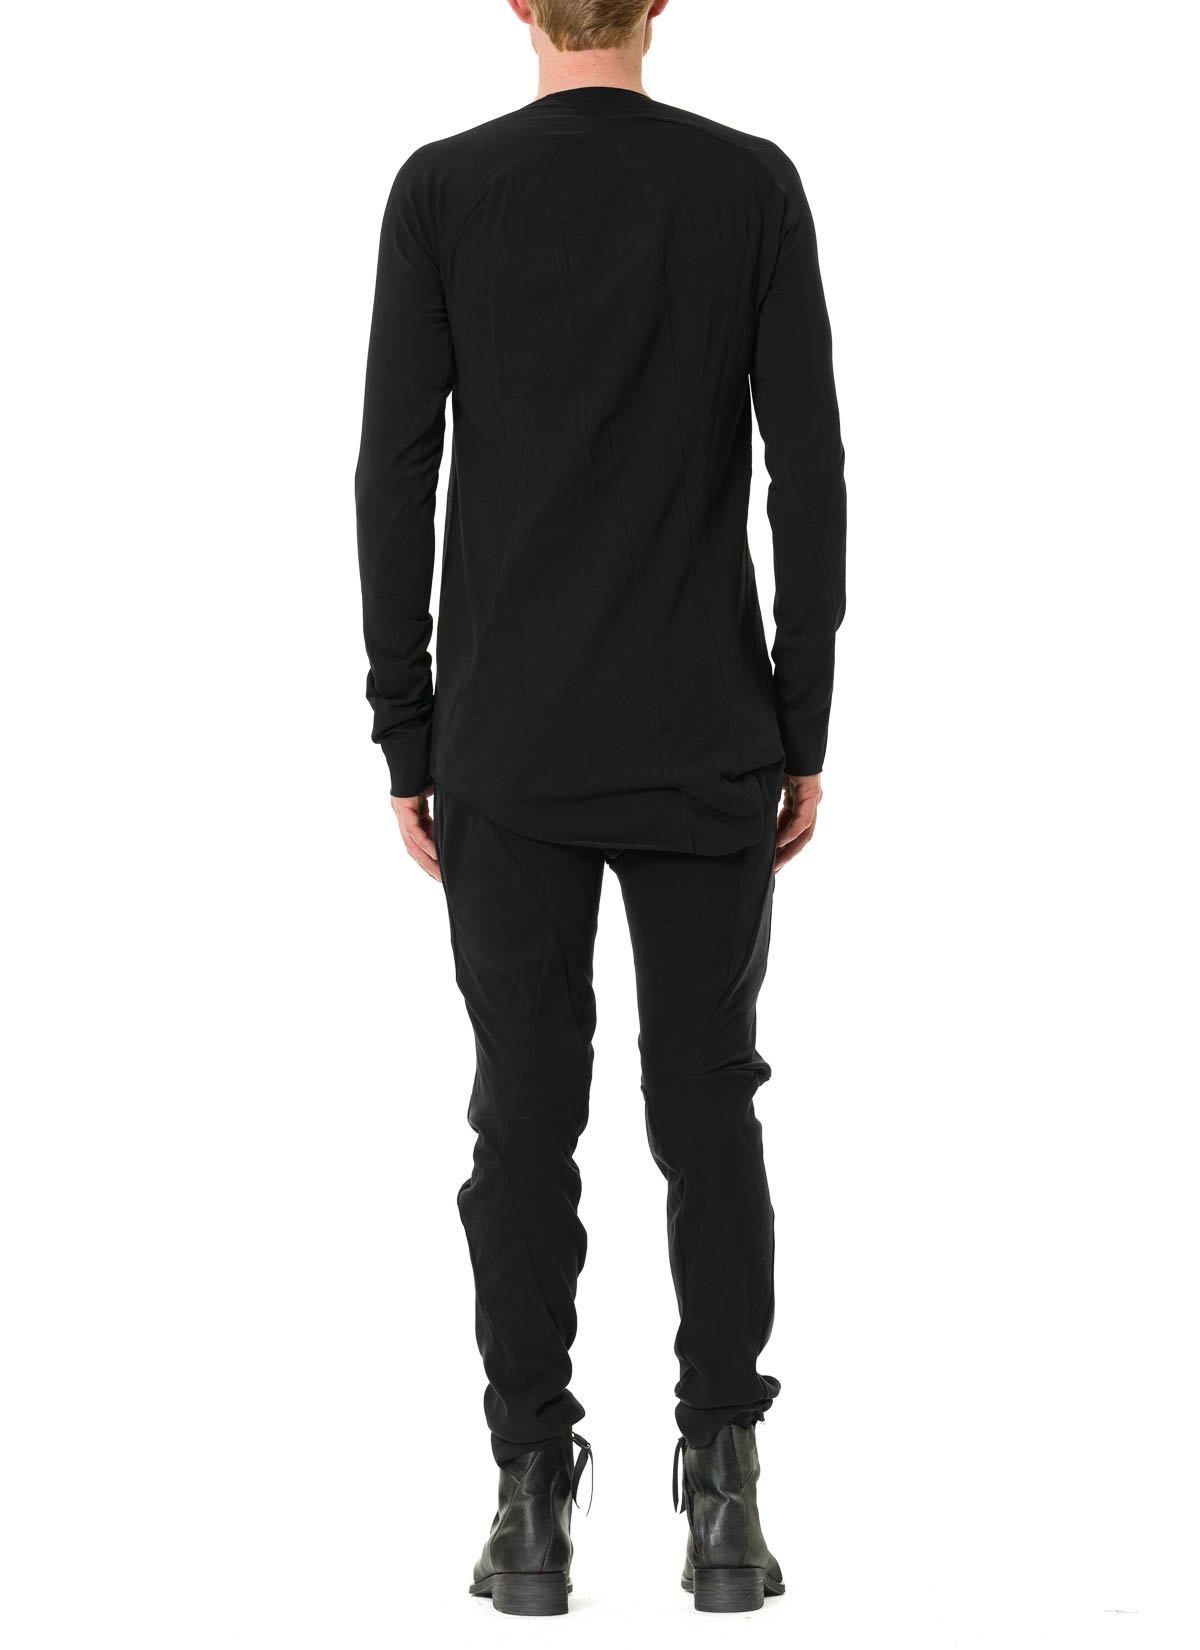 hide-m | LEON EMANUEL BLANCK Distortion LS Curved T-Shirt, black co